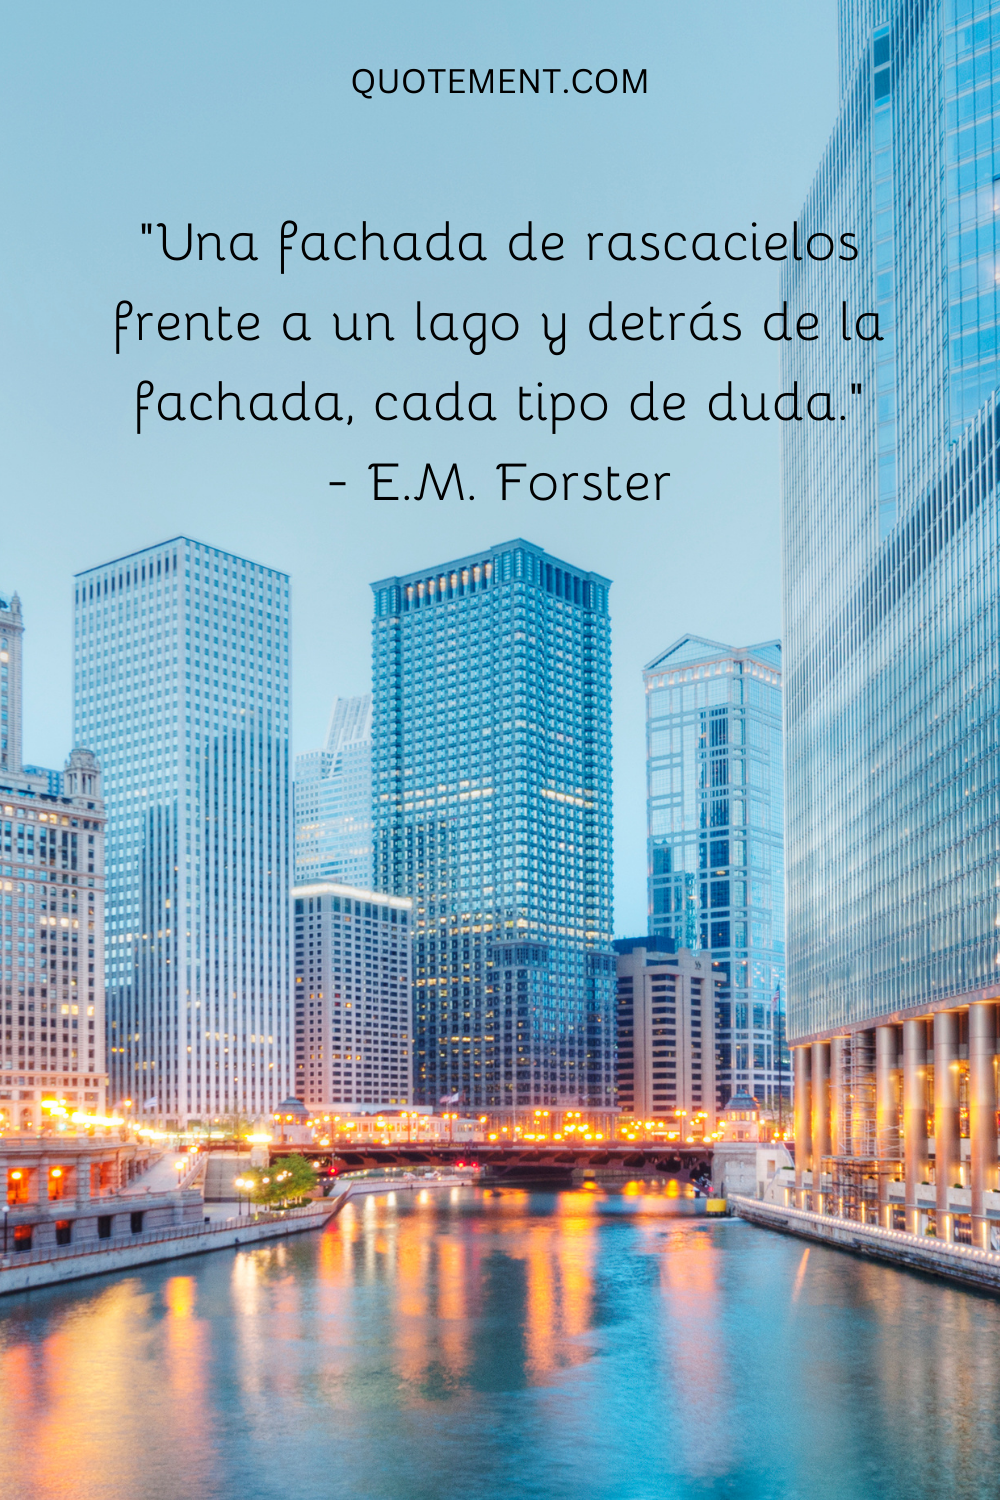 "Una fachada de rascacielos frente a un lago y detrás de la fachada, todo tipo de dudas". - E.M. Forster